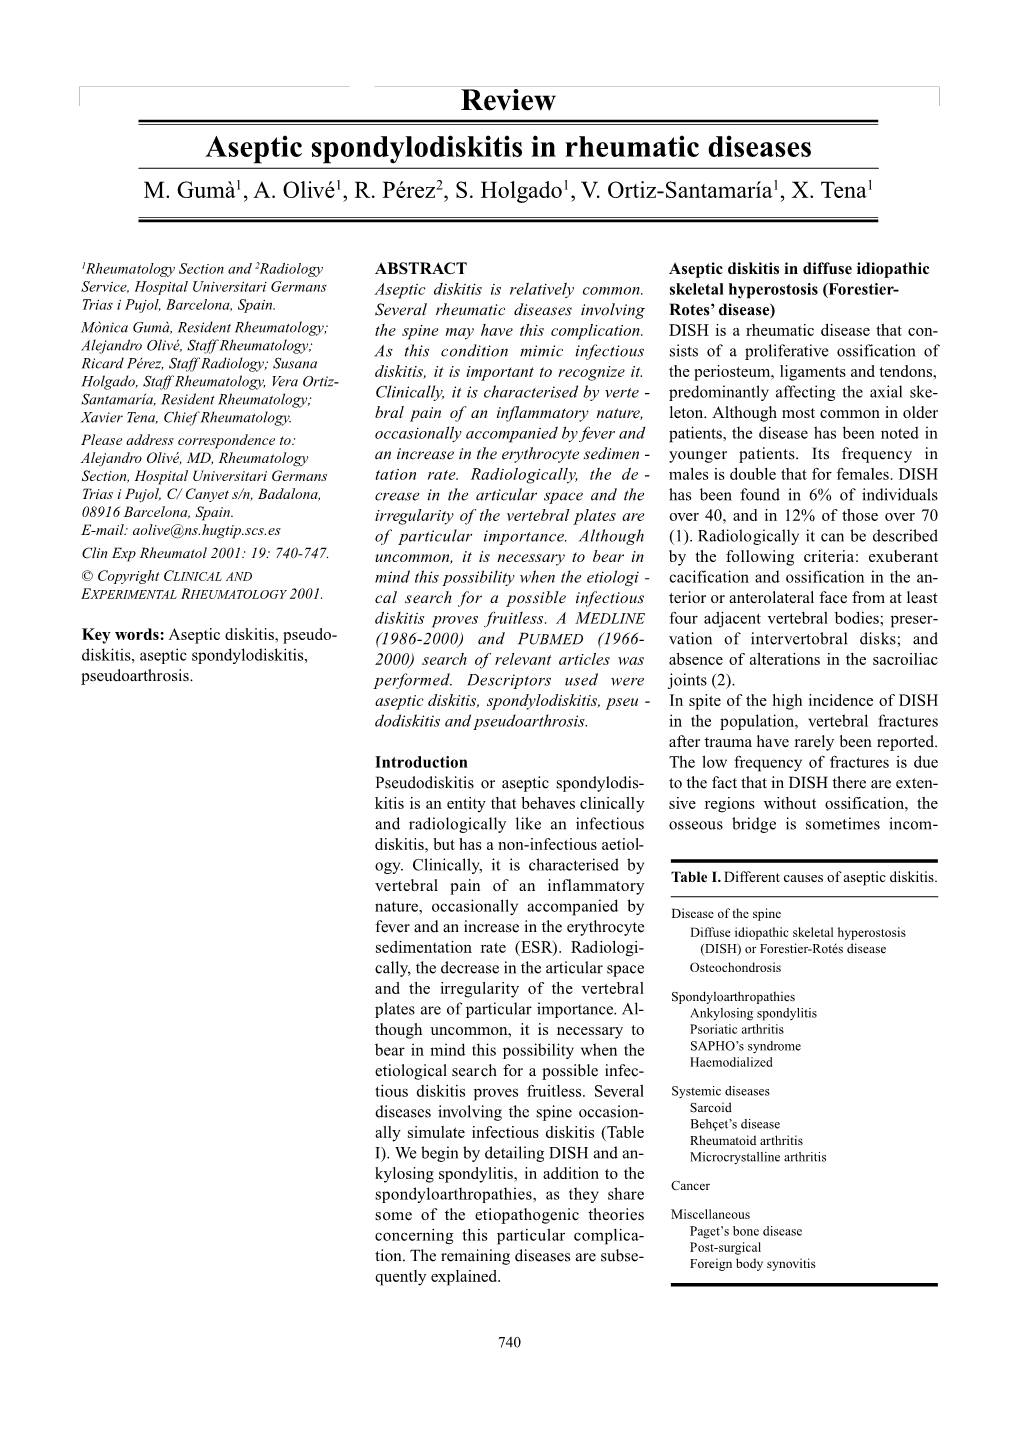 Review Aseptic Spondylodiskitis in Rheumatic Diseases M